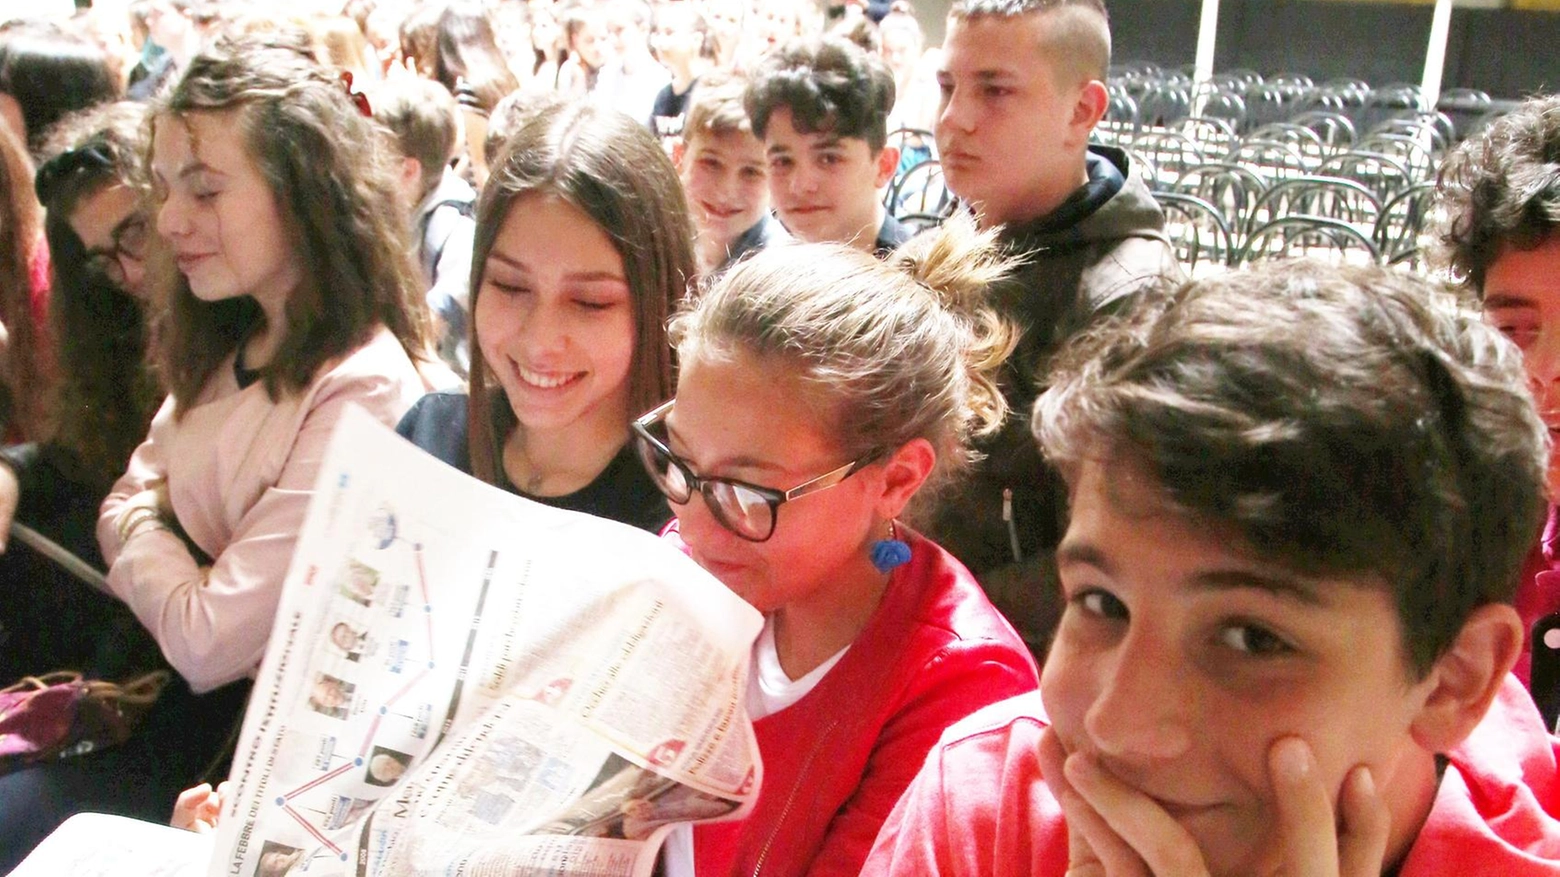 Il Campionato di giornalismo a Pistoia prosegue con diverse sfide tra scuole della zona, tra cui la scuola Anna Frank e l'istituto Suore Mantellate. Il girone di ritorno inizia il 21 marzo.